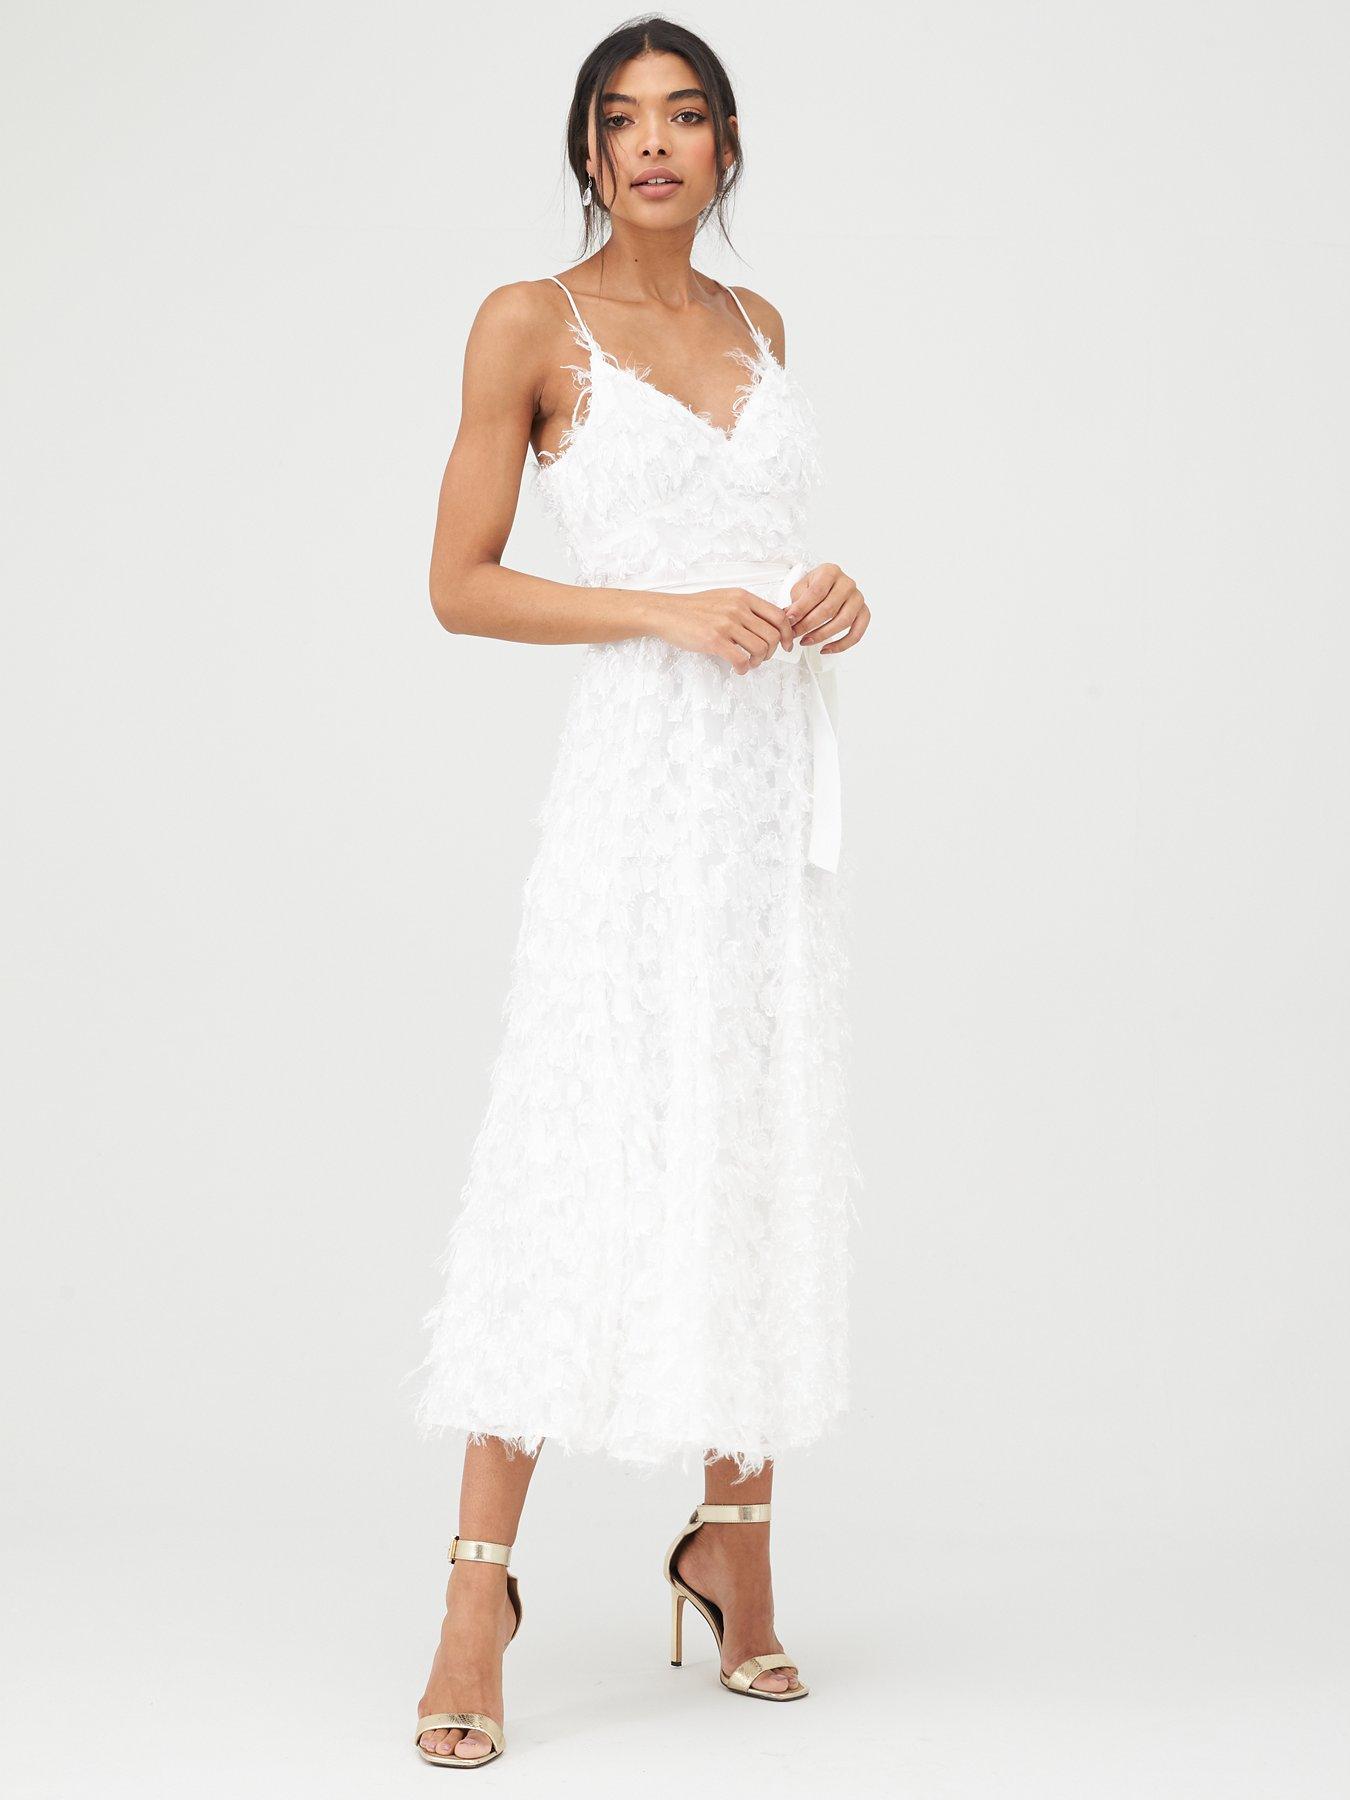 white midi dress uk